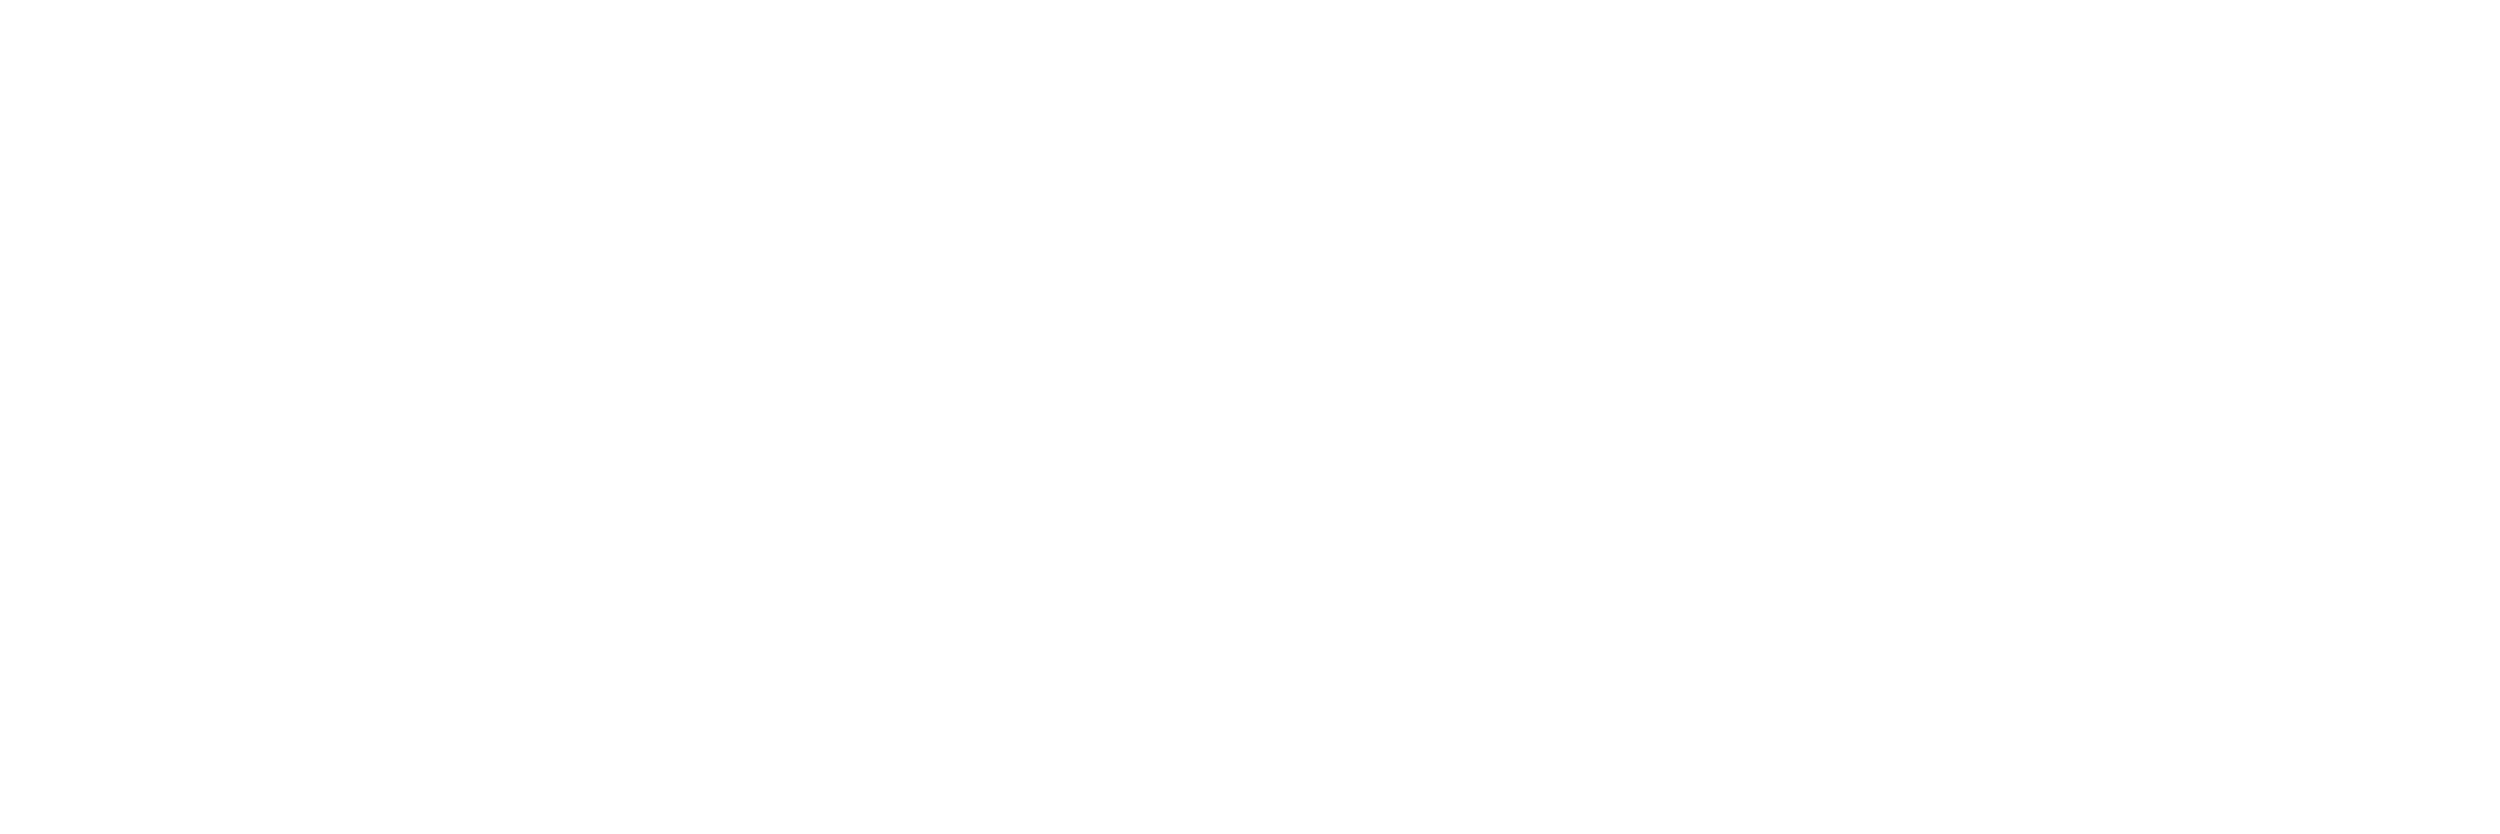 Europyro 2023